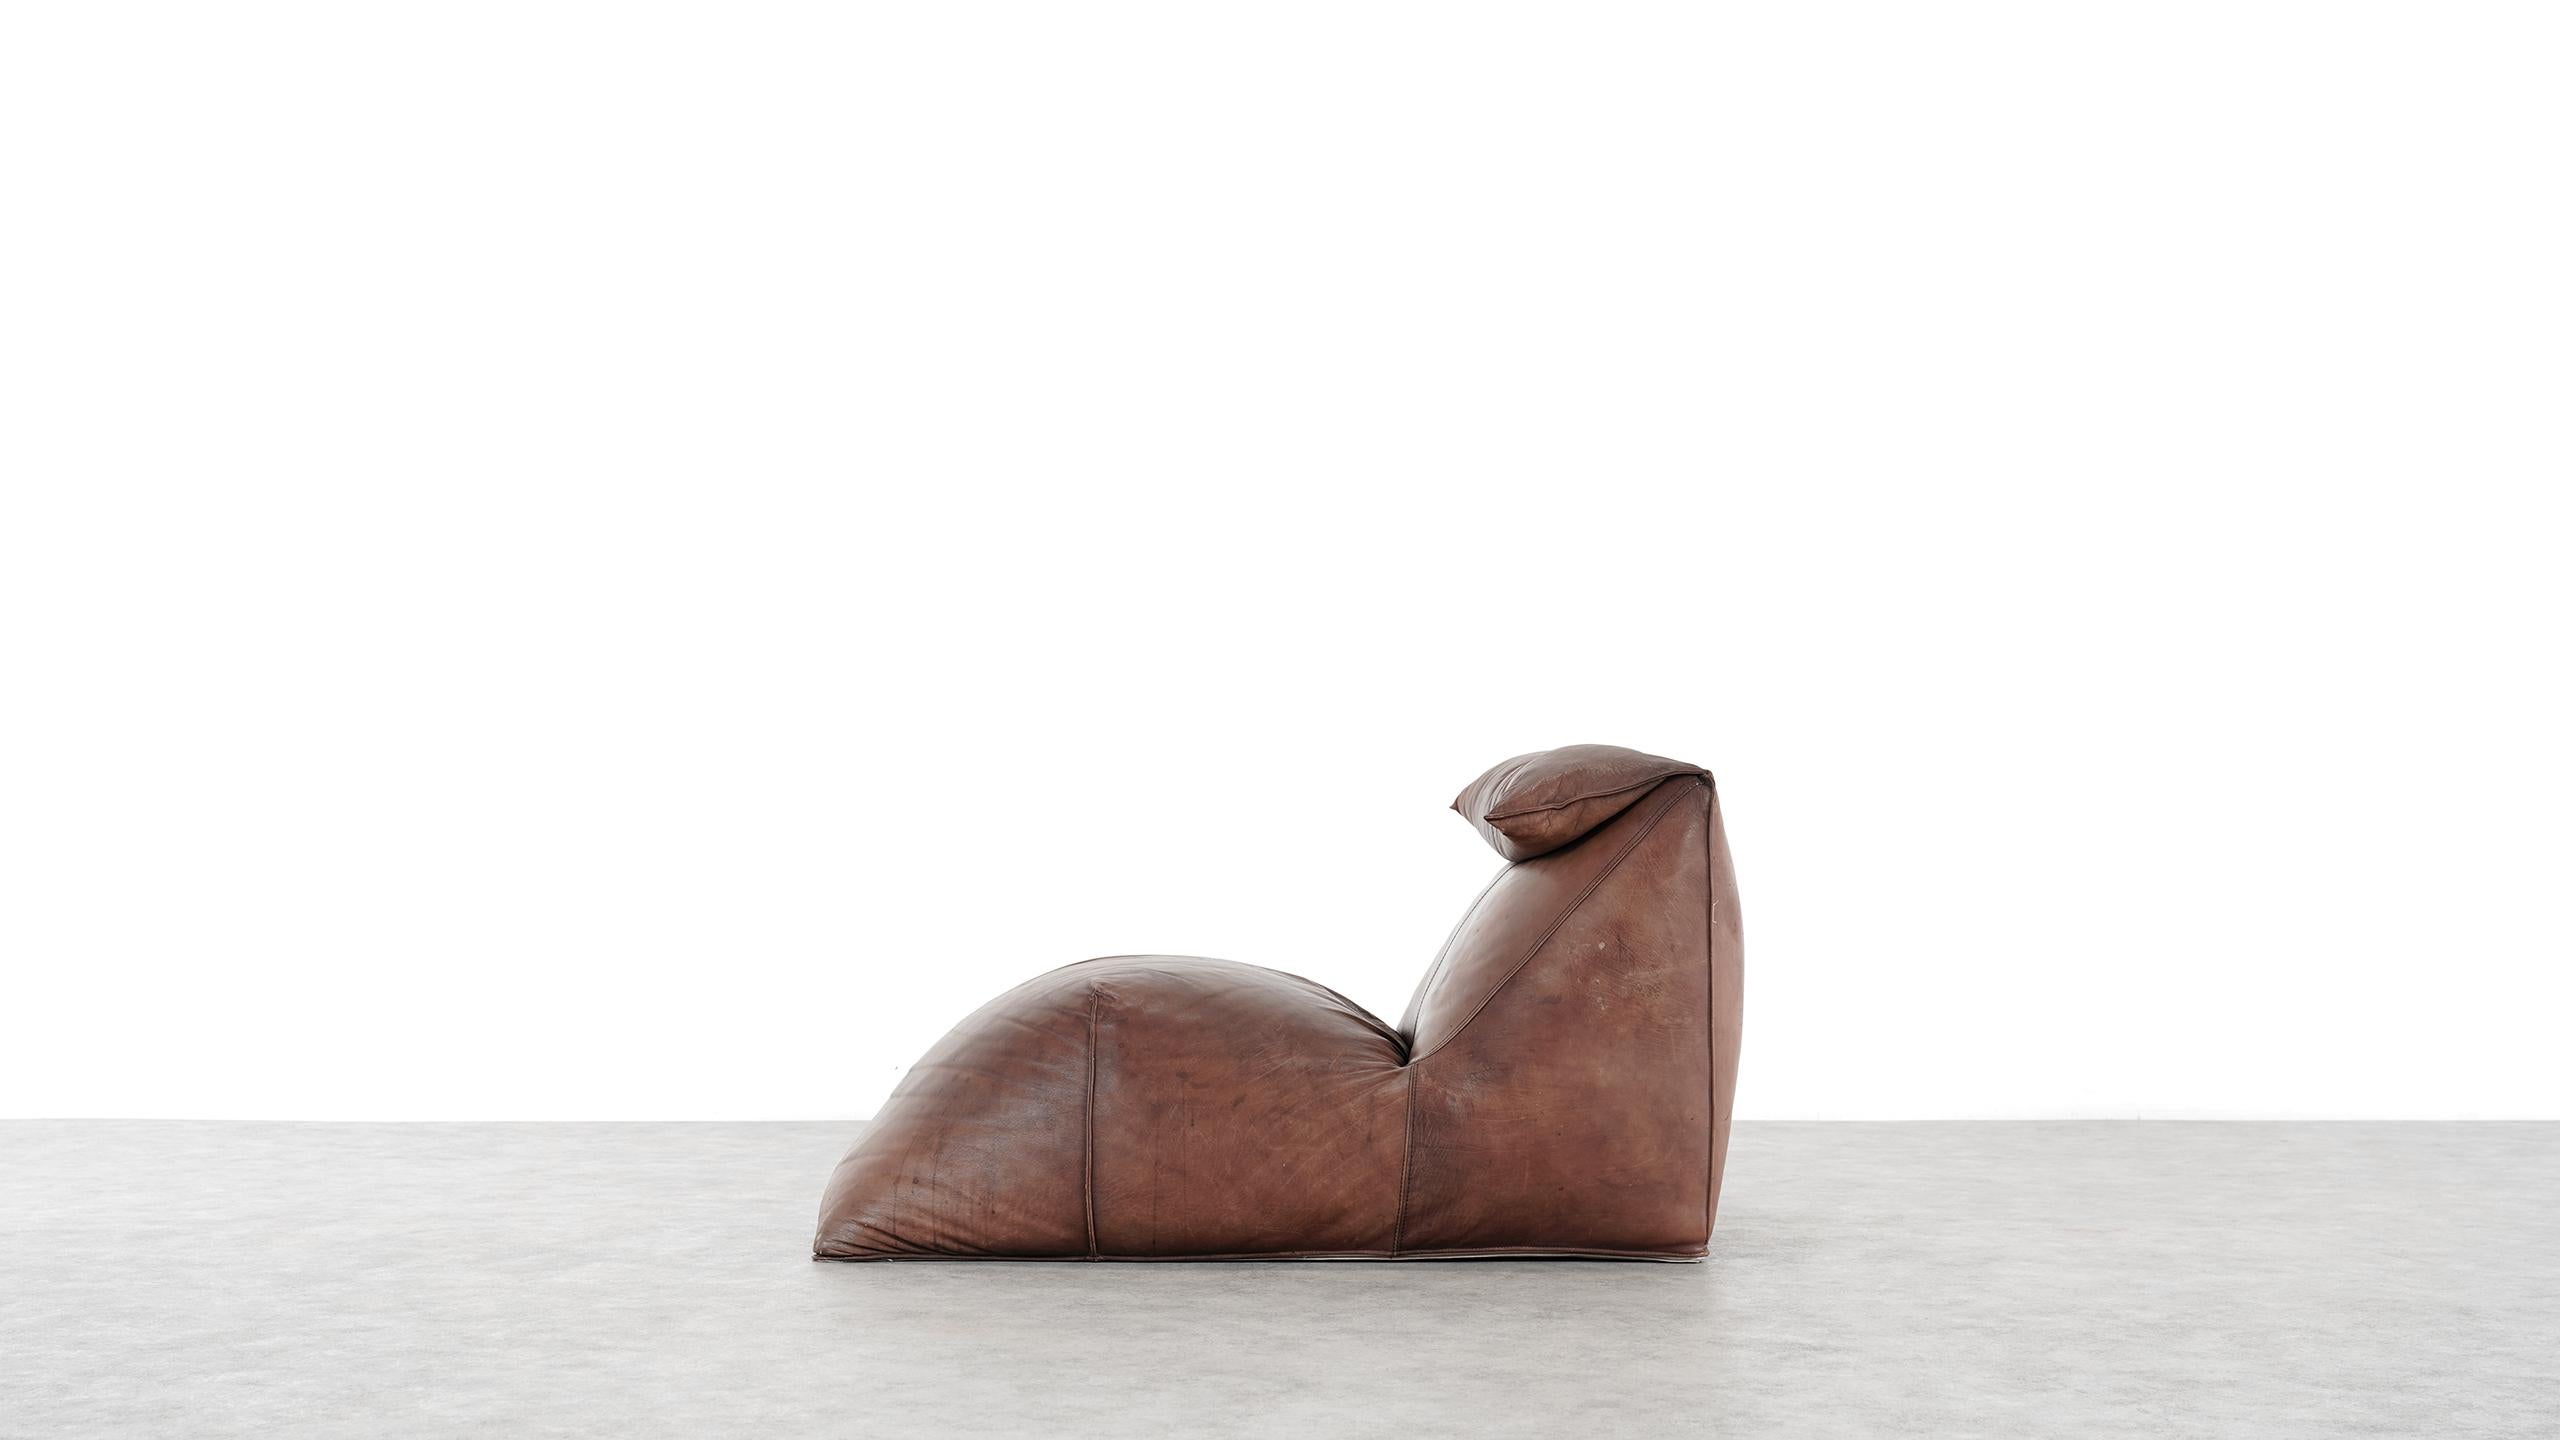 1. Serienversion der legendären Chaiselongue Le Bambole:: 1972 von Mario Bellini für C&B Italia entworfen. 

Mario Bellinis Lounger chair / recamiere steht wie ein überdimensionales Kissen im Raum - ohne Rahmen:: 
aber mit skulpturalen Qualitäten